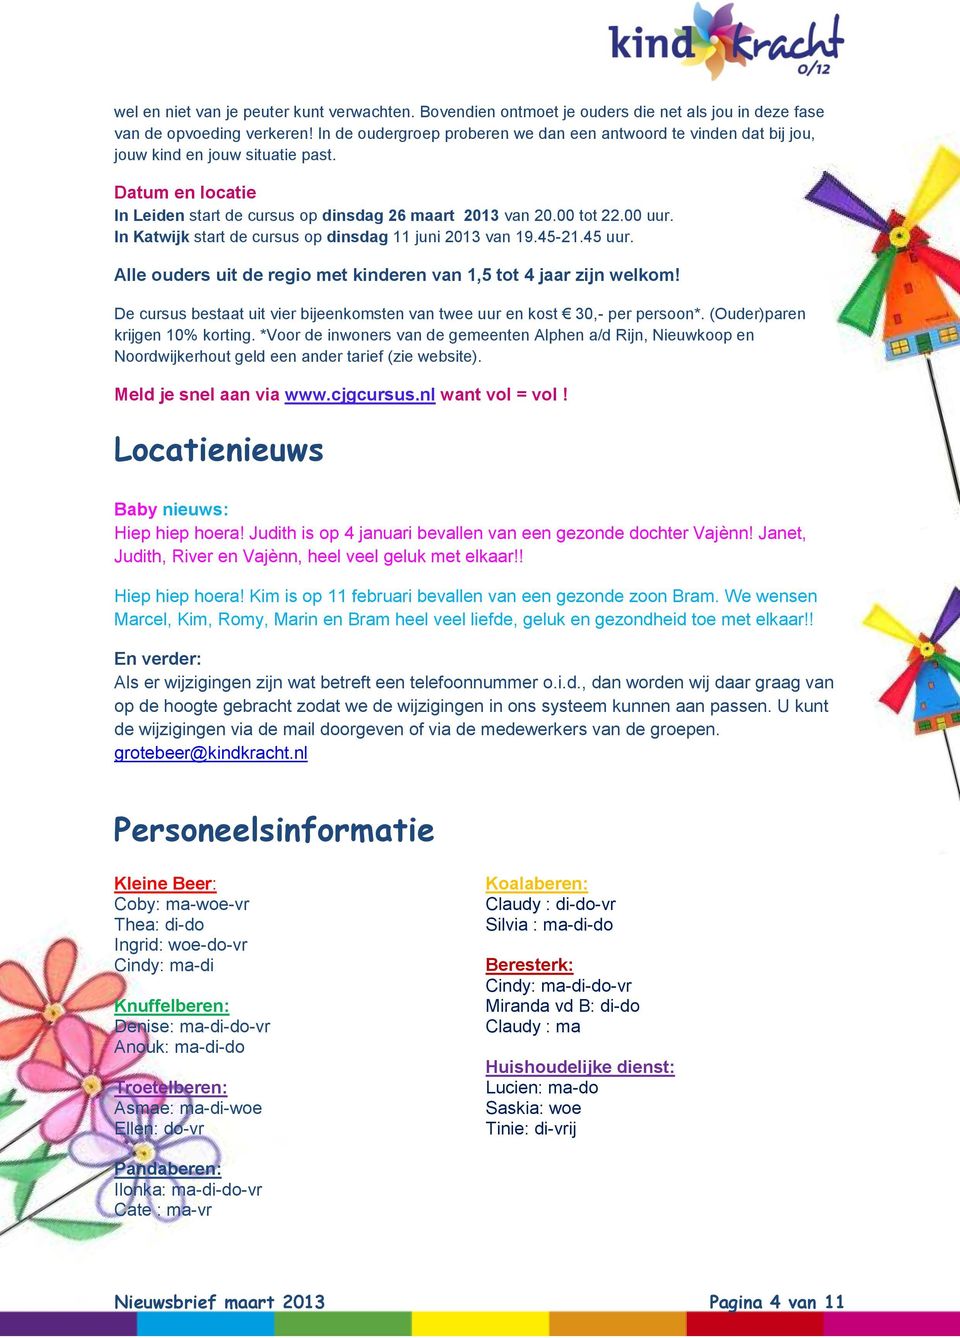 In Katwijk start de cursus op dinsdag 11 juni 2013 van 19.45-21.45 uur. Alle ouders uit de regio met kinderen van 1,5 tot 4 jaar zijn welkom!